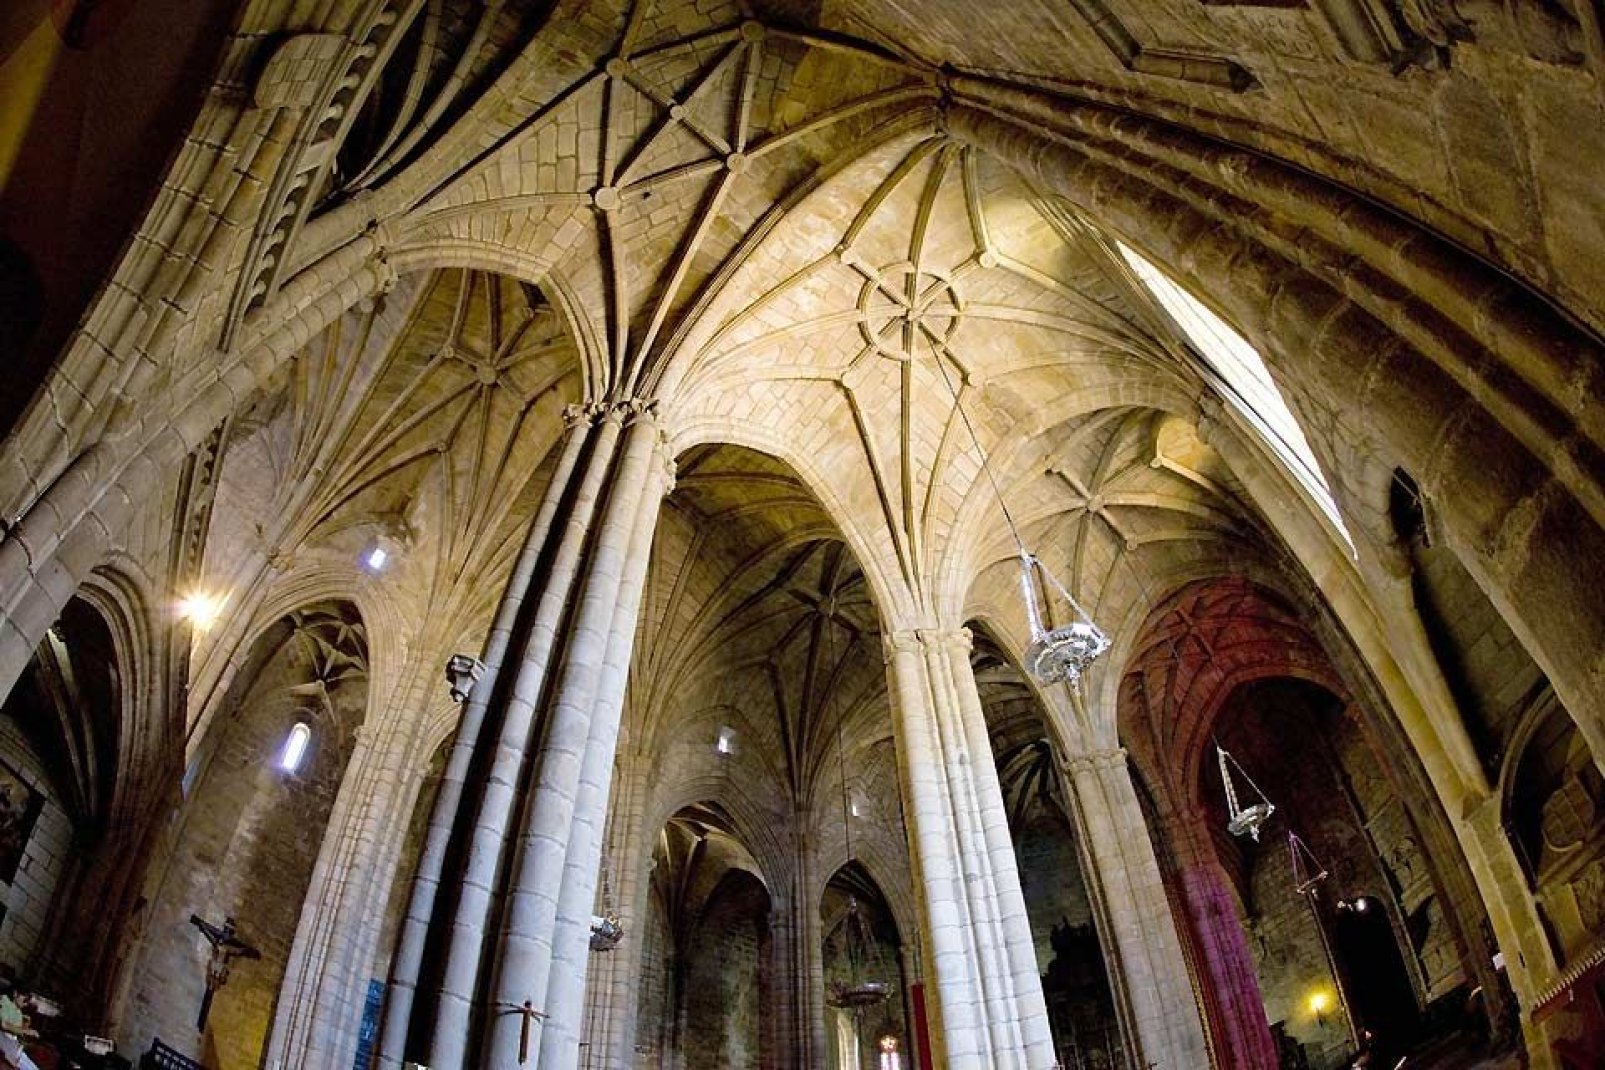 Dieses gotische Bauwerk aus dem 15. Jahrhundert besteht aus 3 Hauptschiffen mit Kreuzrippengewlbedecken.